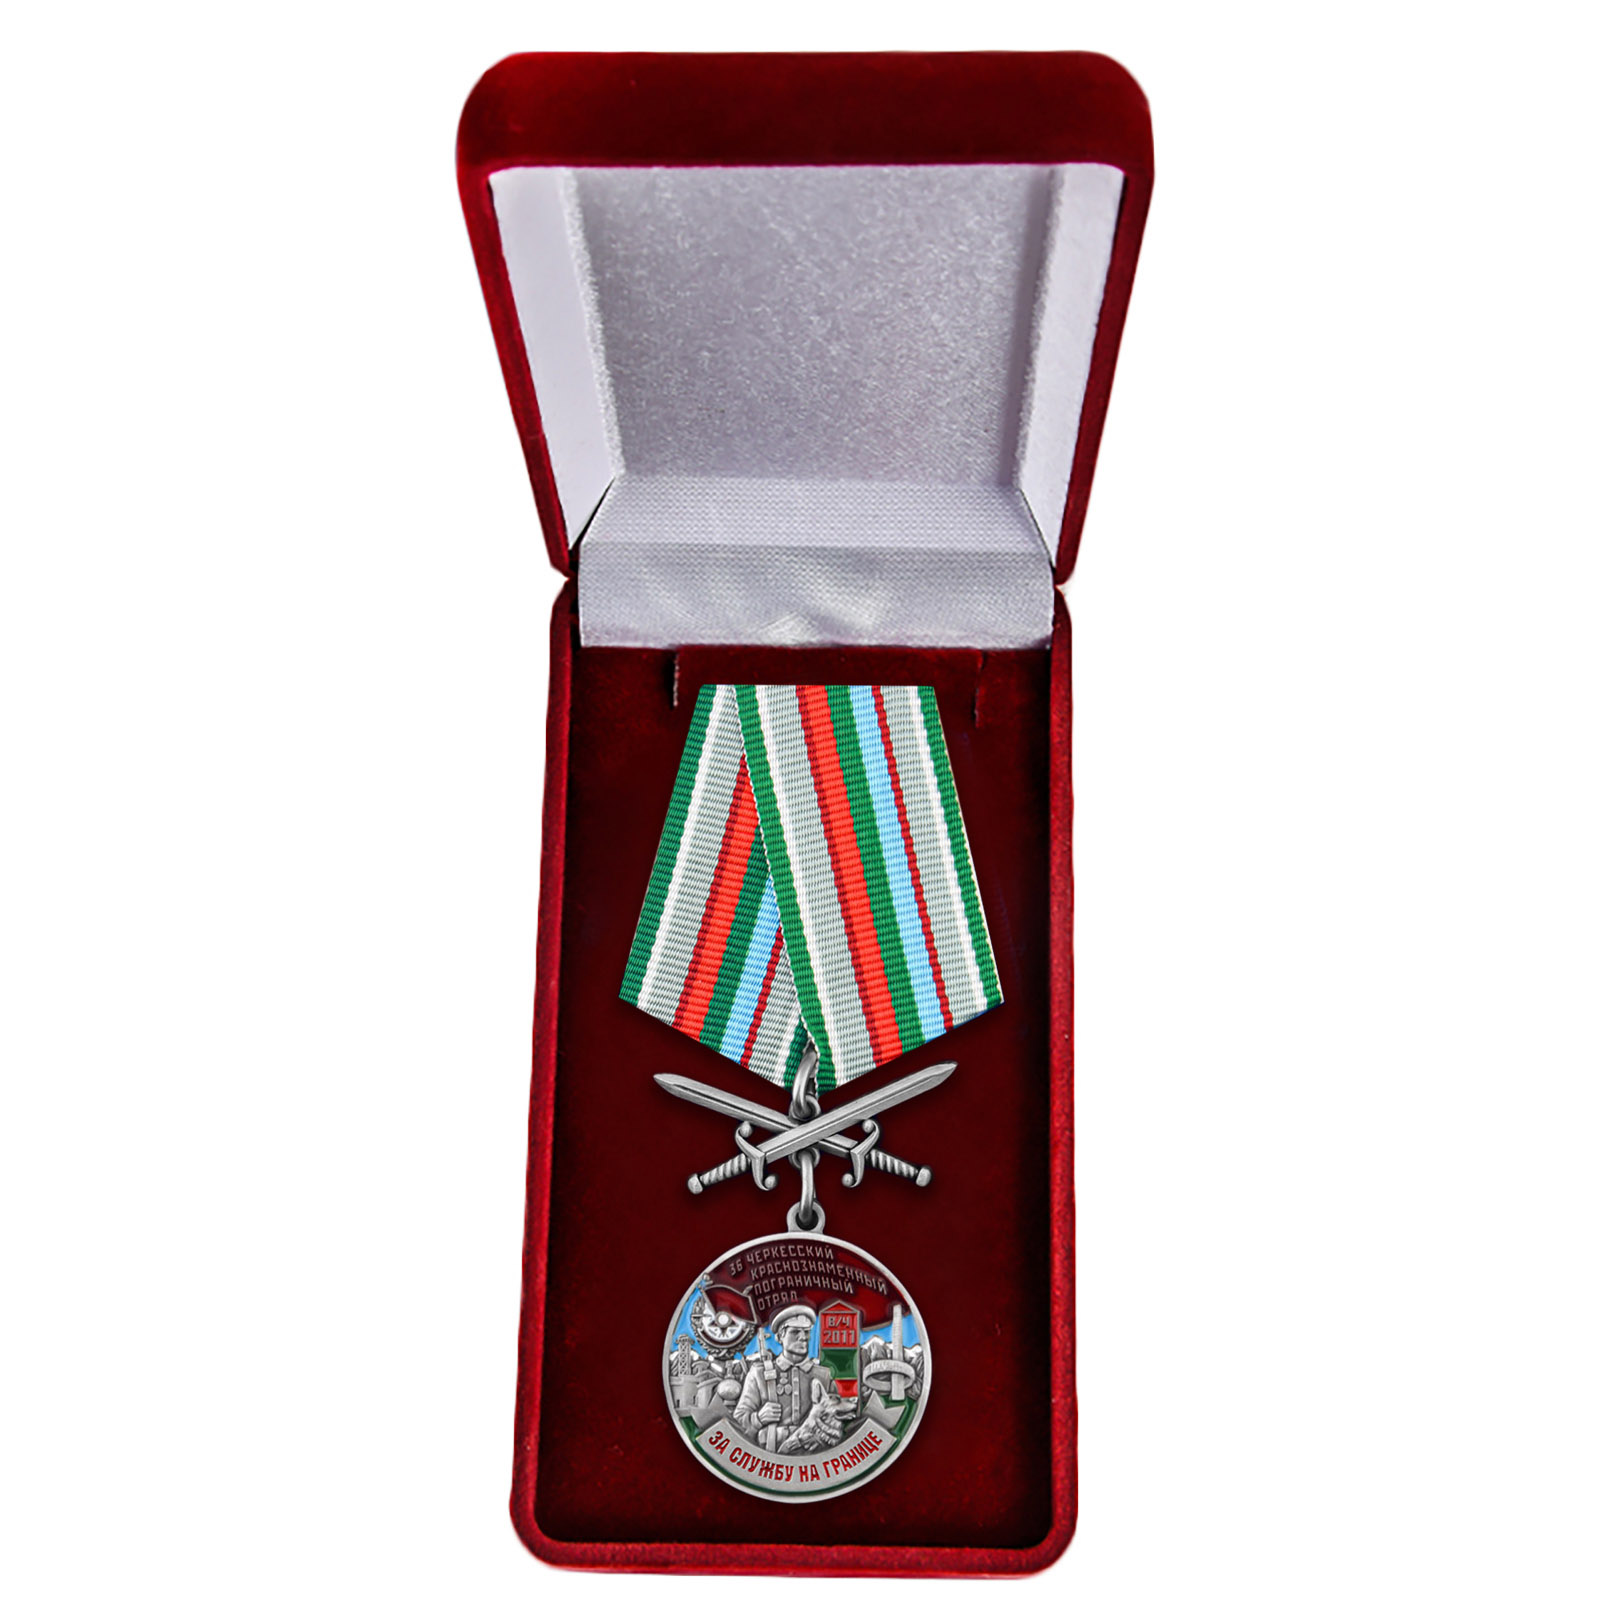 Купить медаль "За службу в Черкесском пограничном отряде" в бархатистом футляре